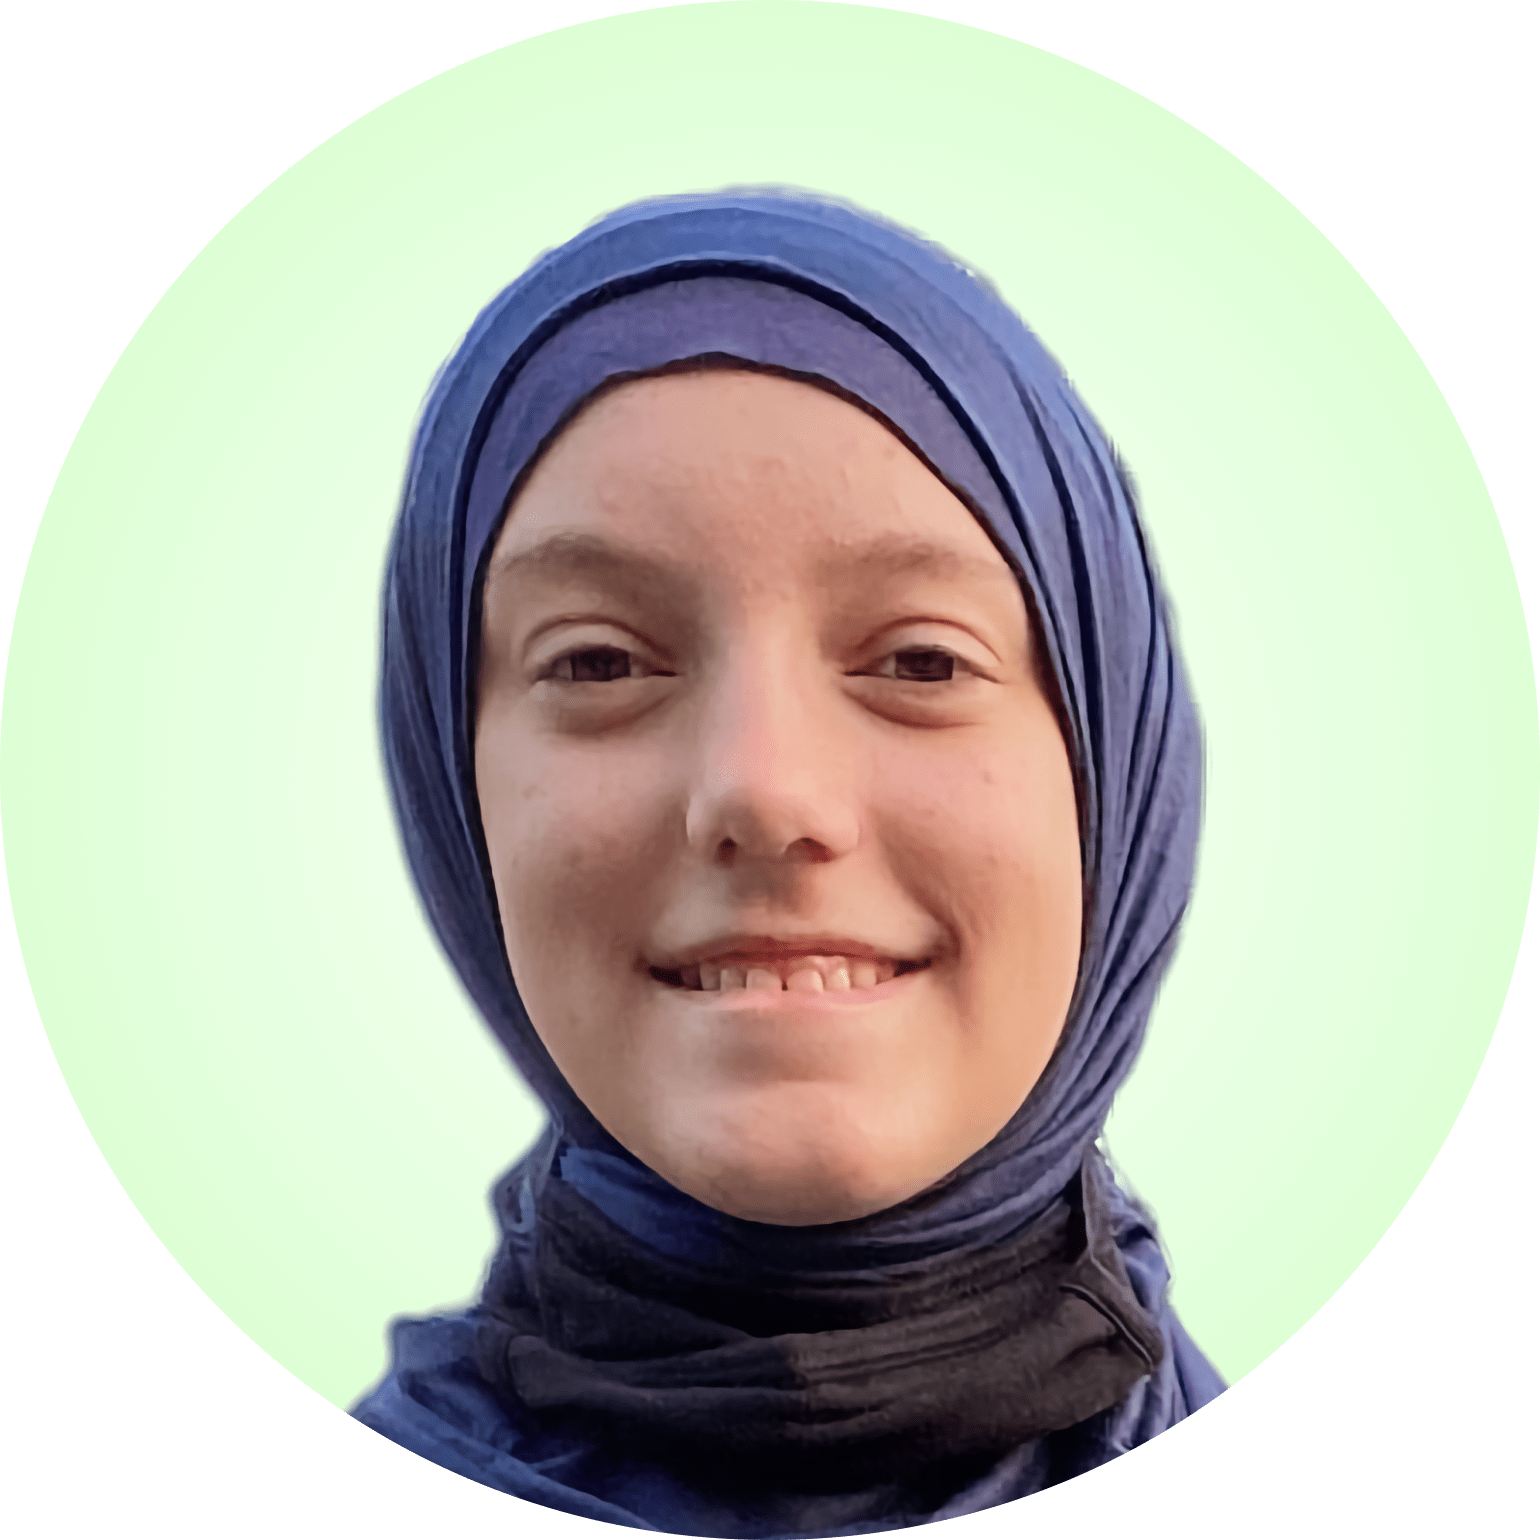 Girl - Age 13 - Safiya Jewel Blevins